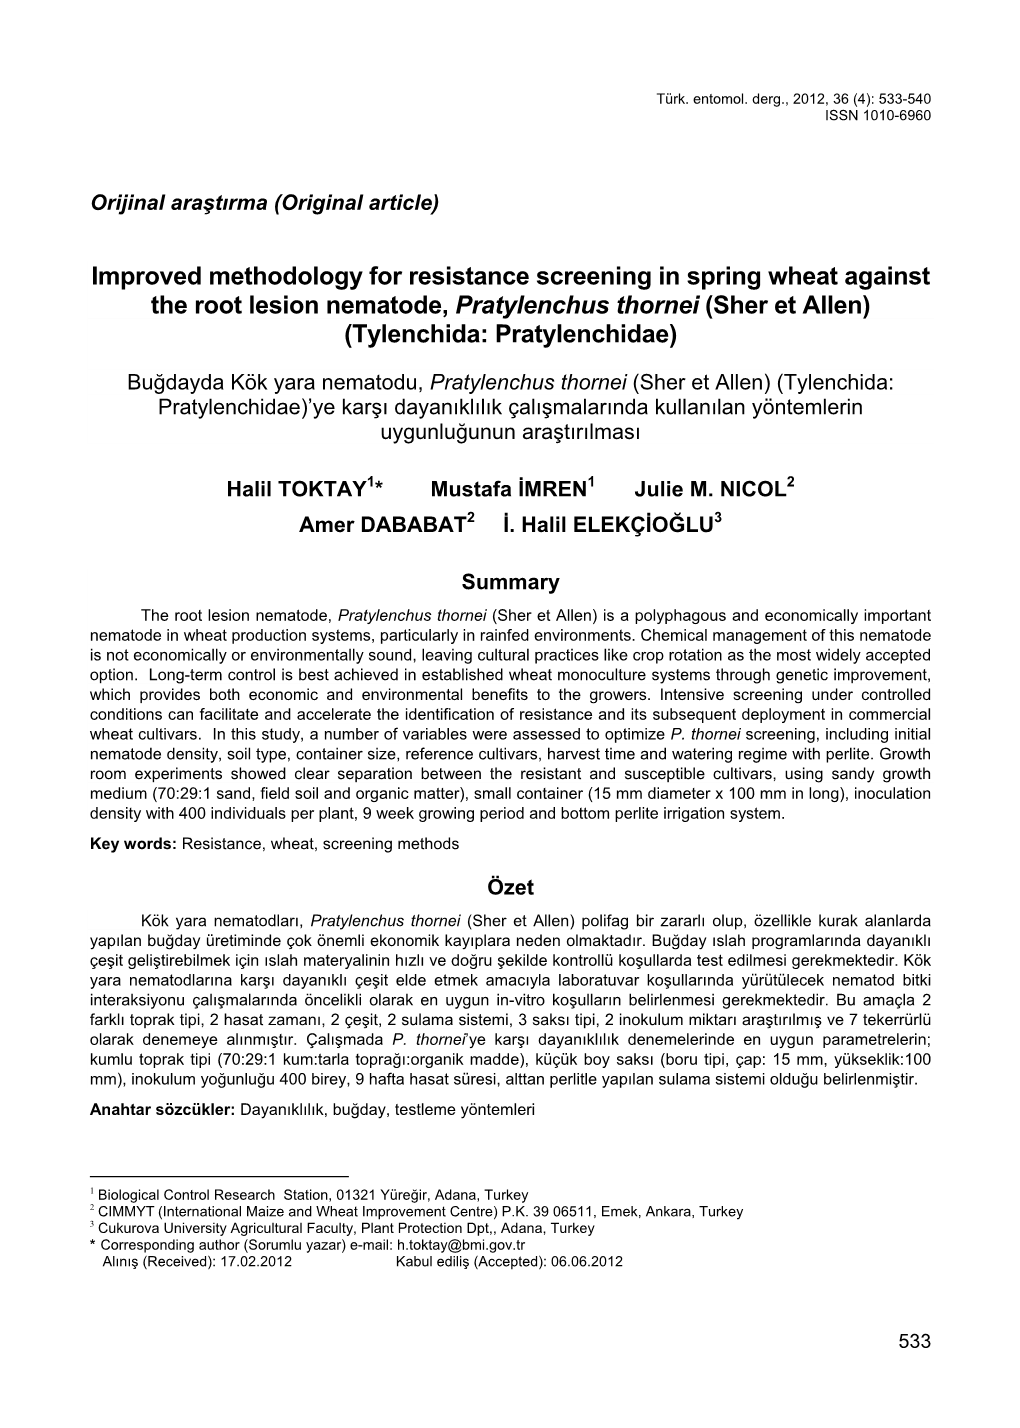 Improved Methodology for Resistance Screening in Spring Wheat Against the Root Lesion Nematode, Pratylenchus Thornei (Sher Et Allen) (Tylenchida: Pratylenchidae)